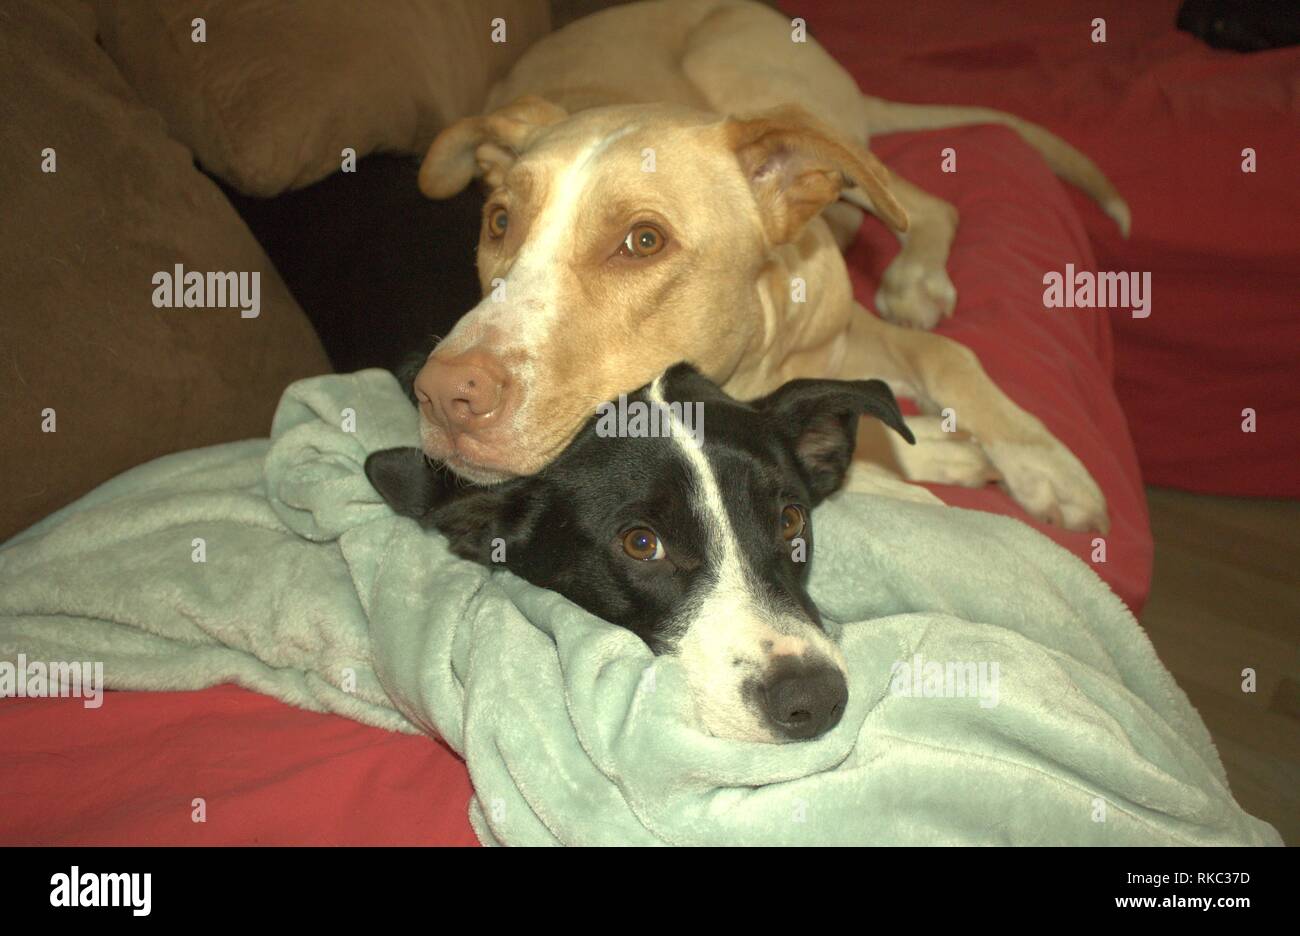 Zwei Hunde Kuscheln auf der Couch Stockfotografie - Alamy